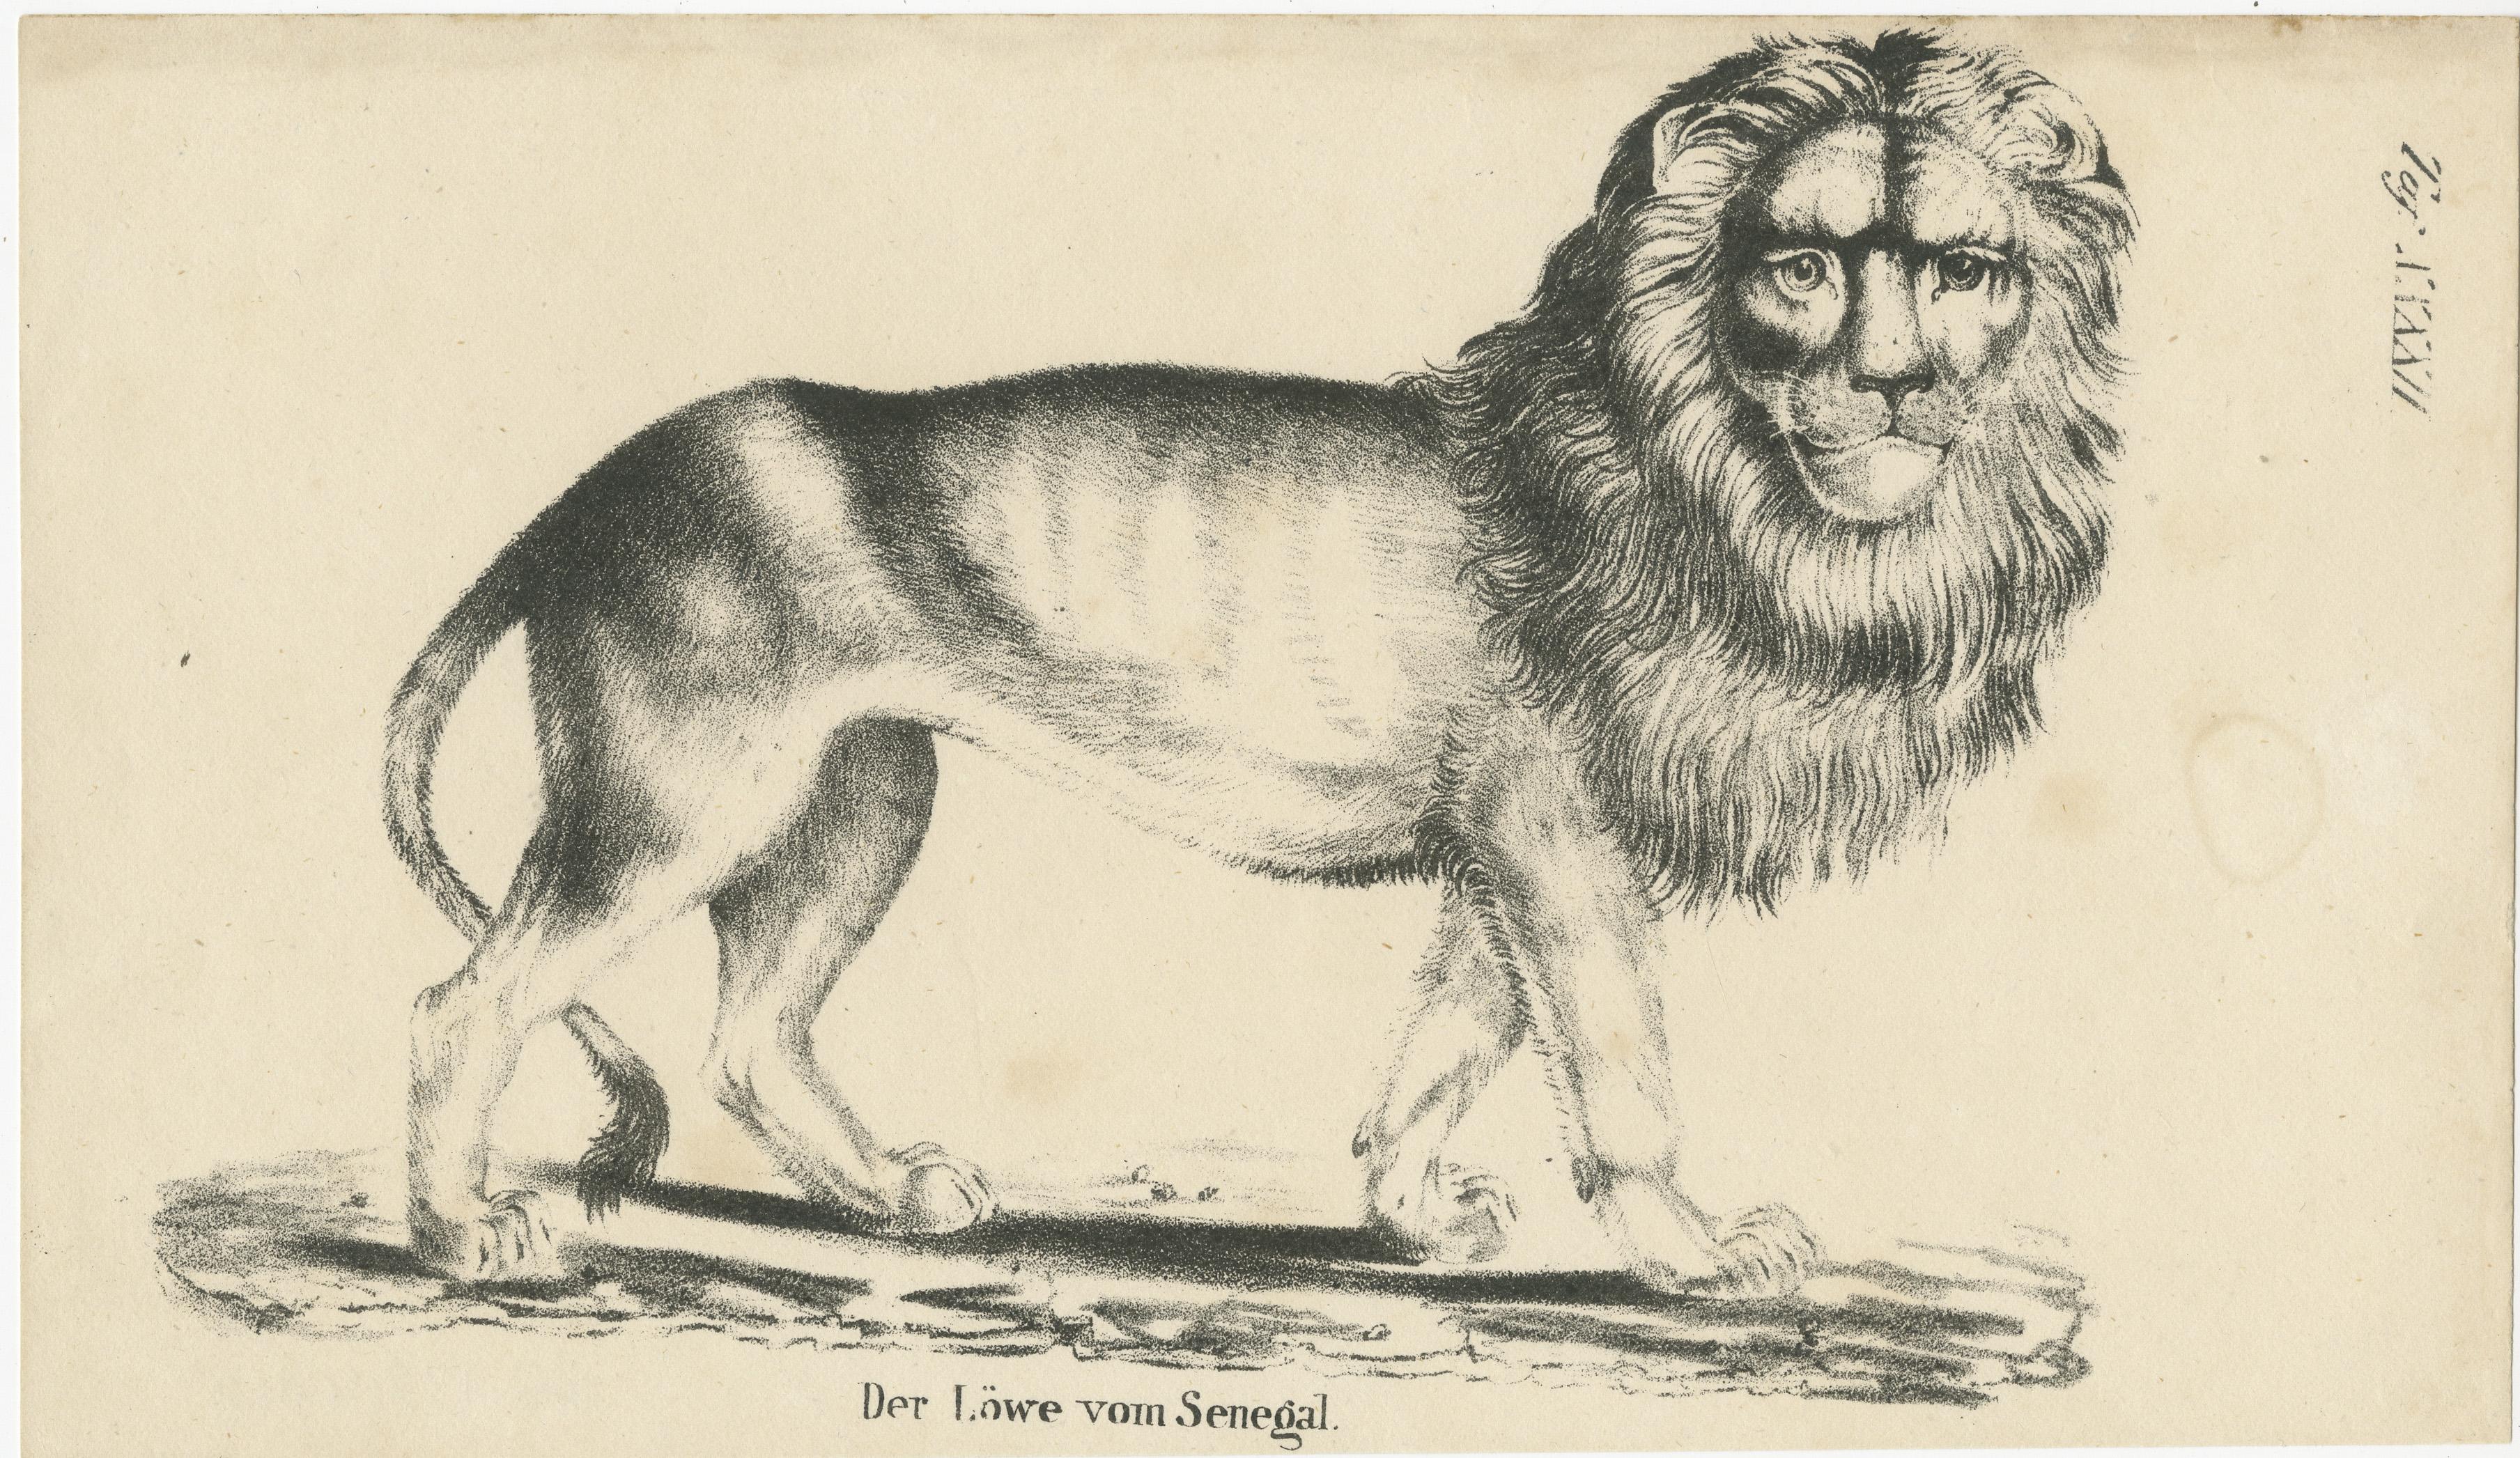 Antique print titled 'Der Löwe vom Senegal'. Lithograph of a Senegal lion. This print originates from 'Die Naturgeschichte in getreuen Abbildungen mit ausführlicher Beschreibung derselben - Säugethiere' by Brüggeman, 1831.